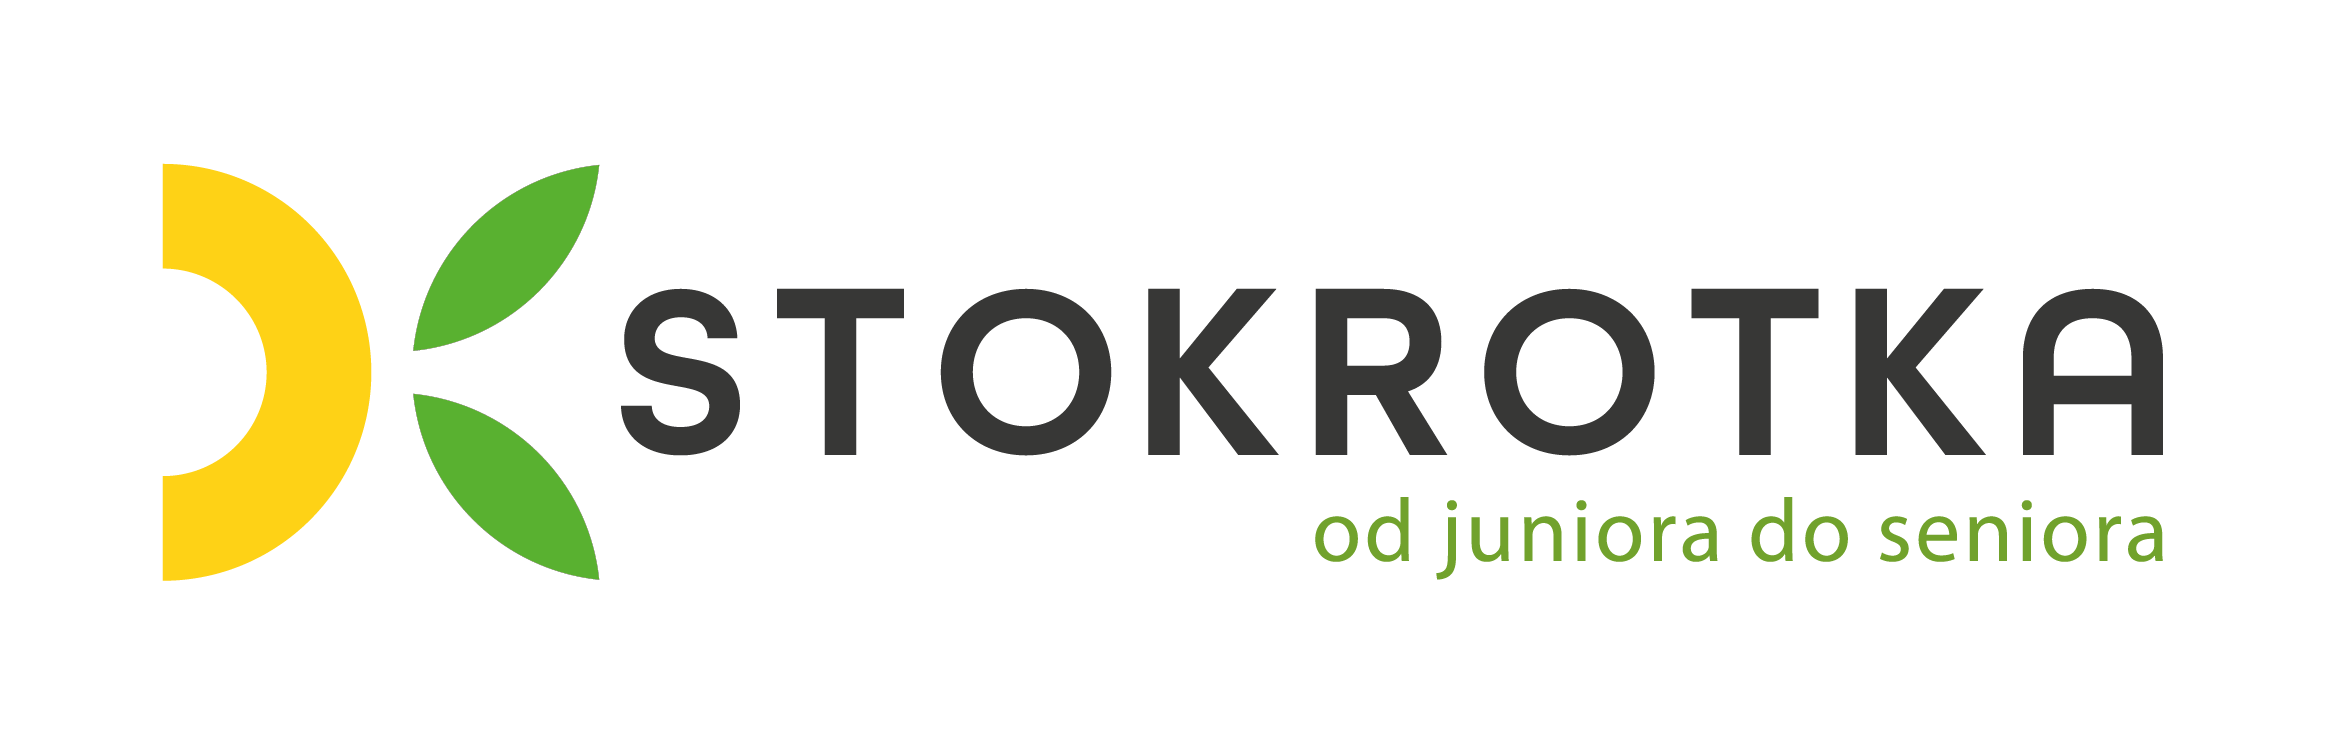 DKStokrotka logo wersja pozioma claim